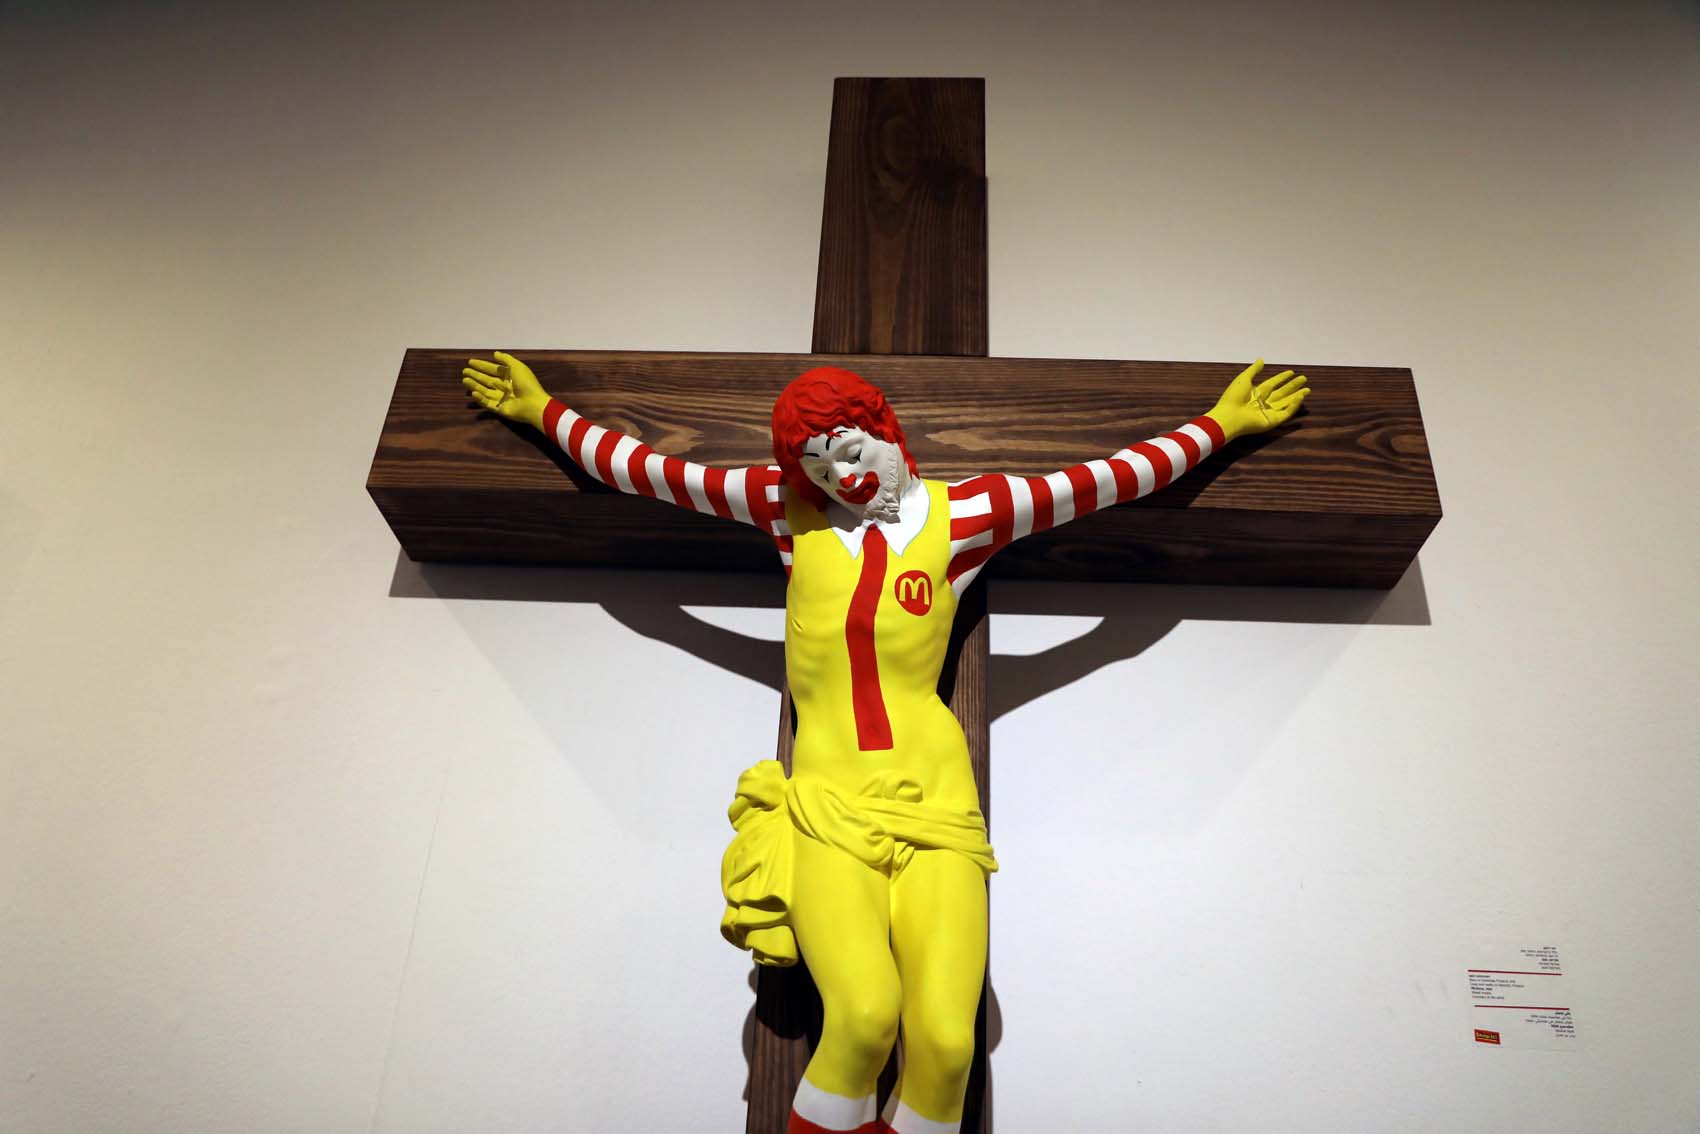 McJesus: La escultura con Ronald McDonald crucificado que causó disturbios en Israel (fotos)